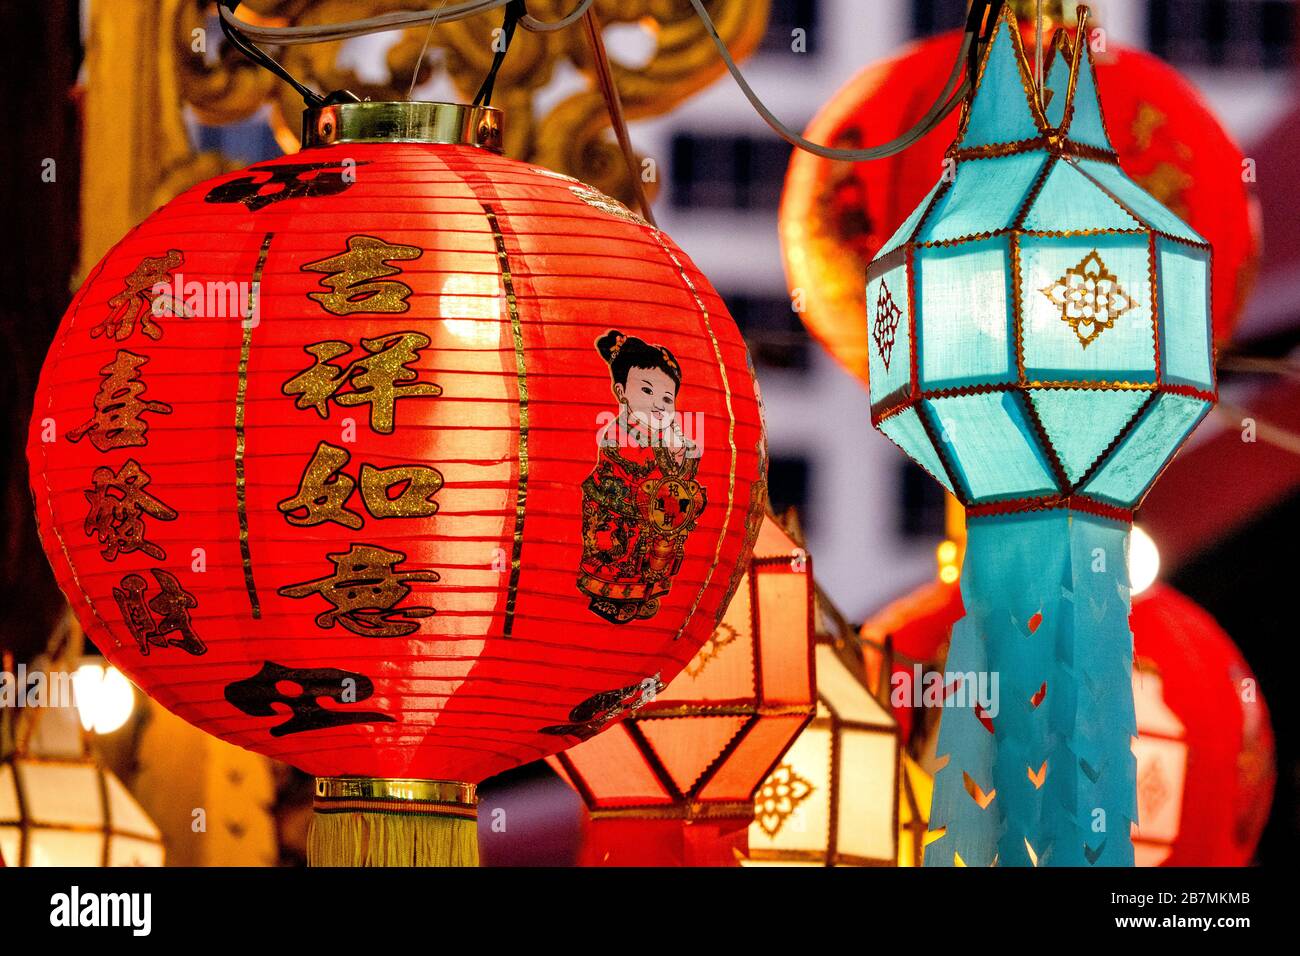 Lanterne chinoise et lanterne lanna Banque D'Images